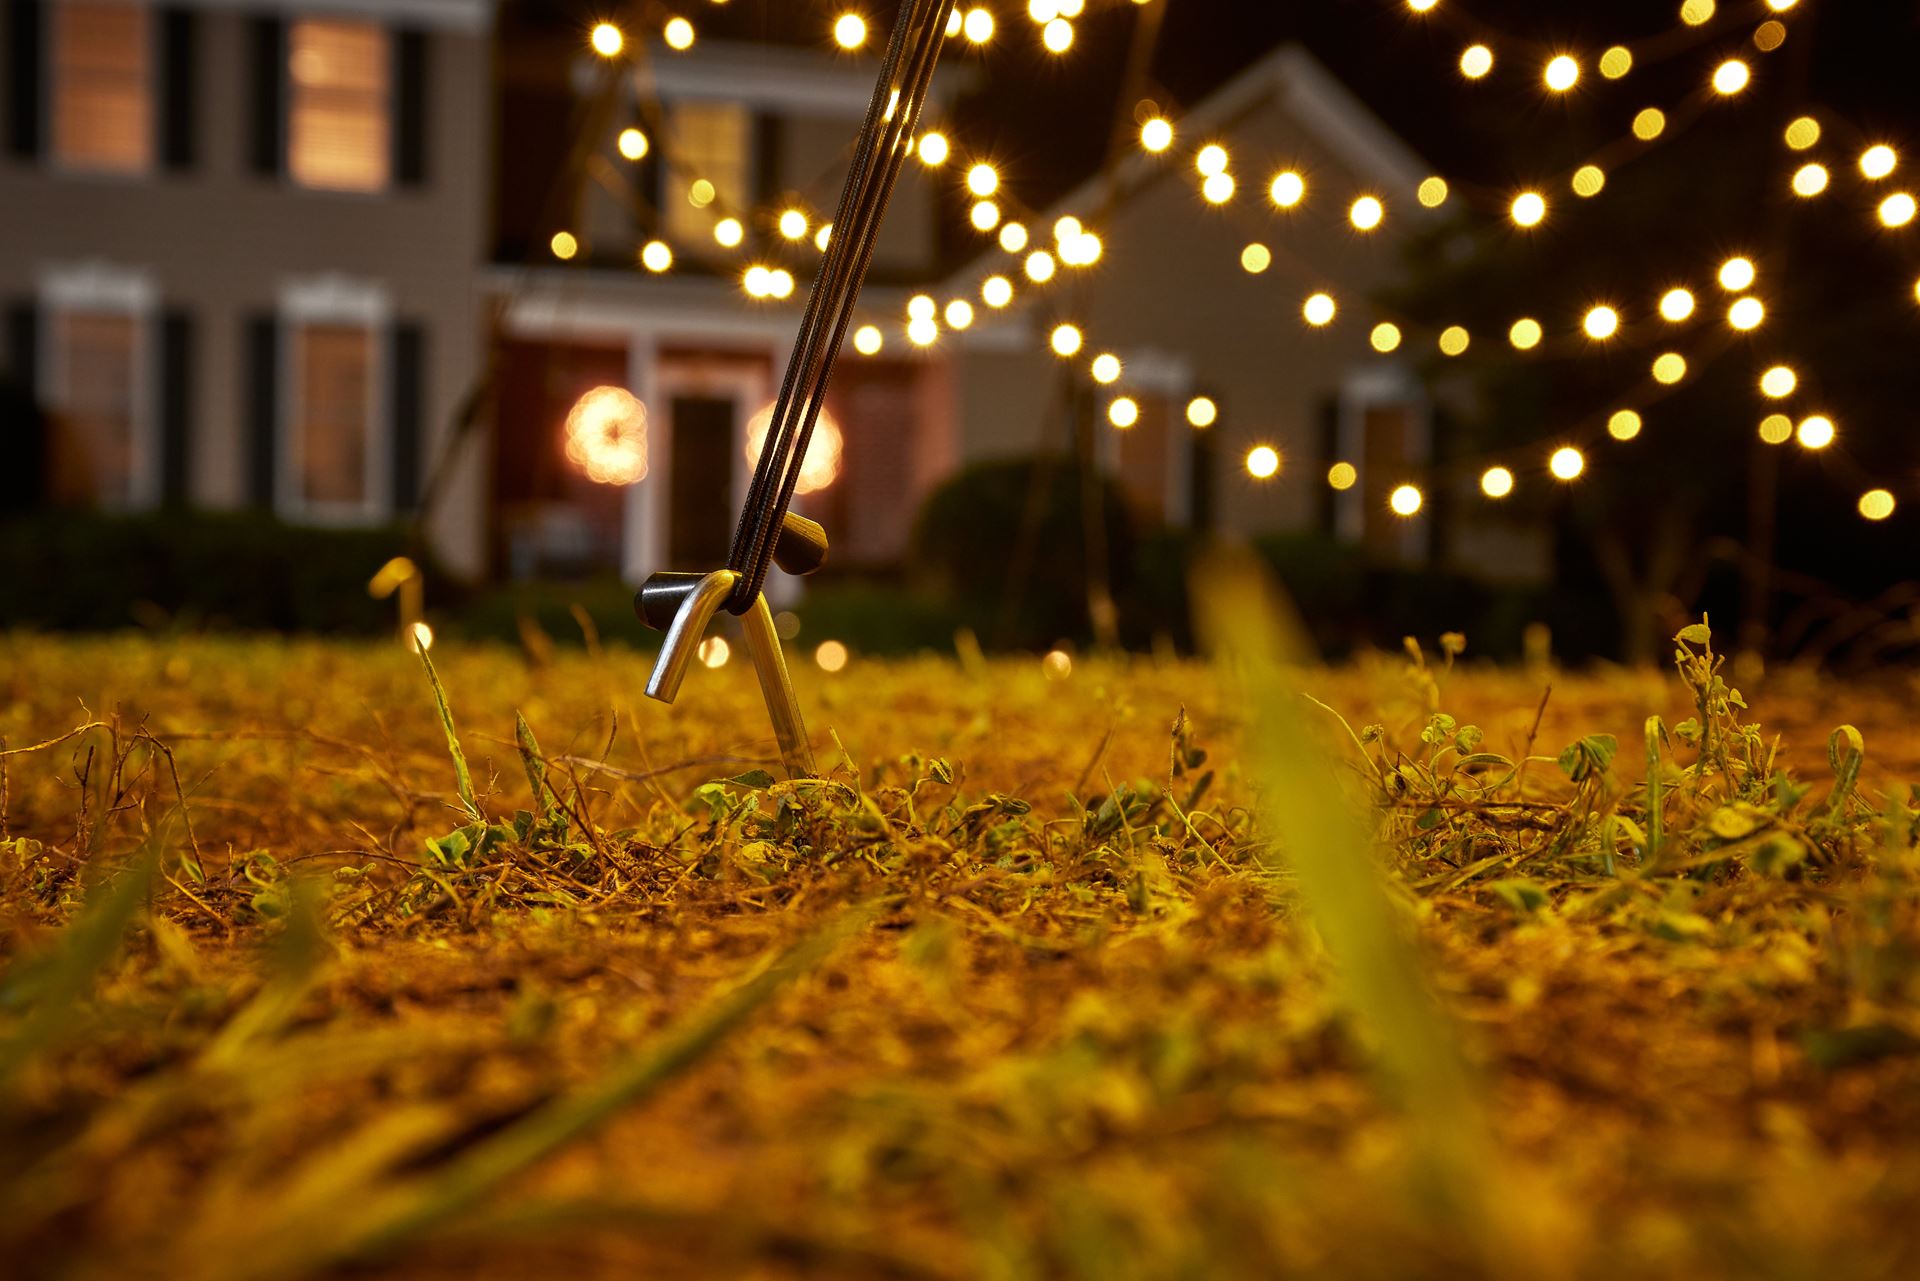 Fairybell-kerstverlichting-kerstboom-10M-hoog-4000-LED-lampjes-in-warmwitte-kleur